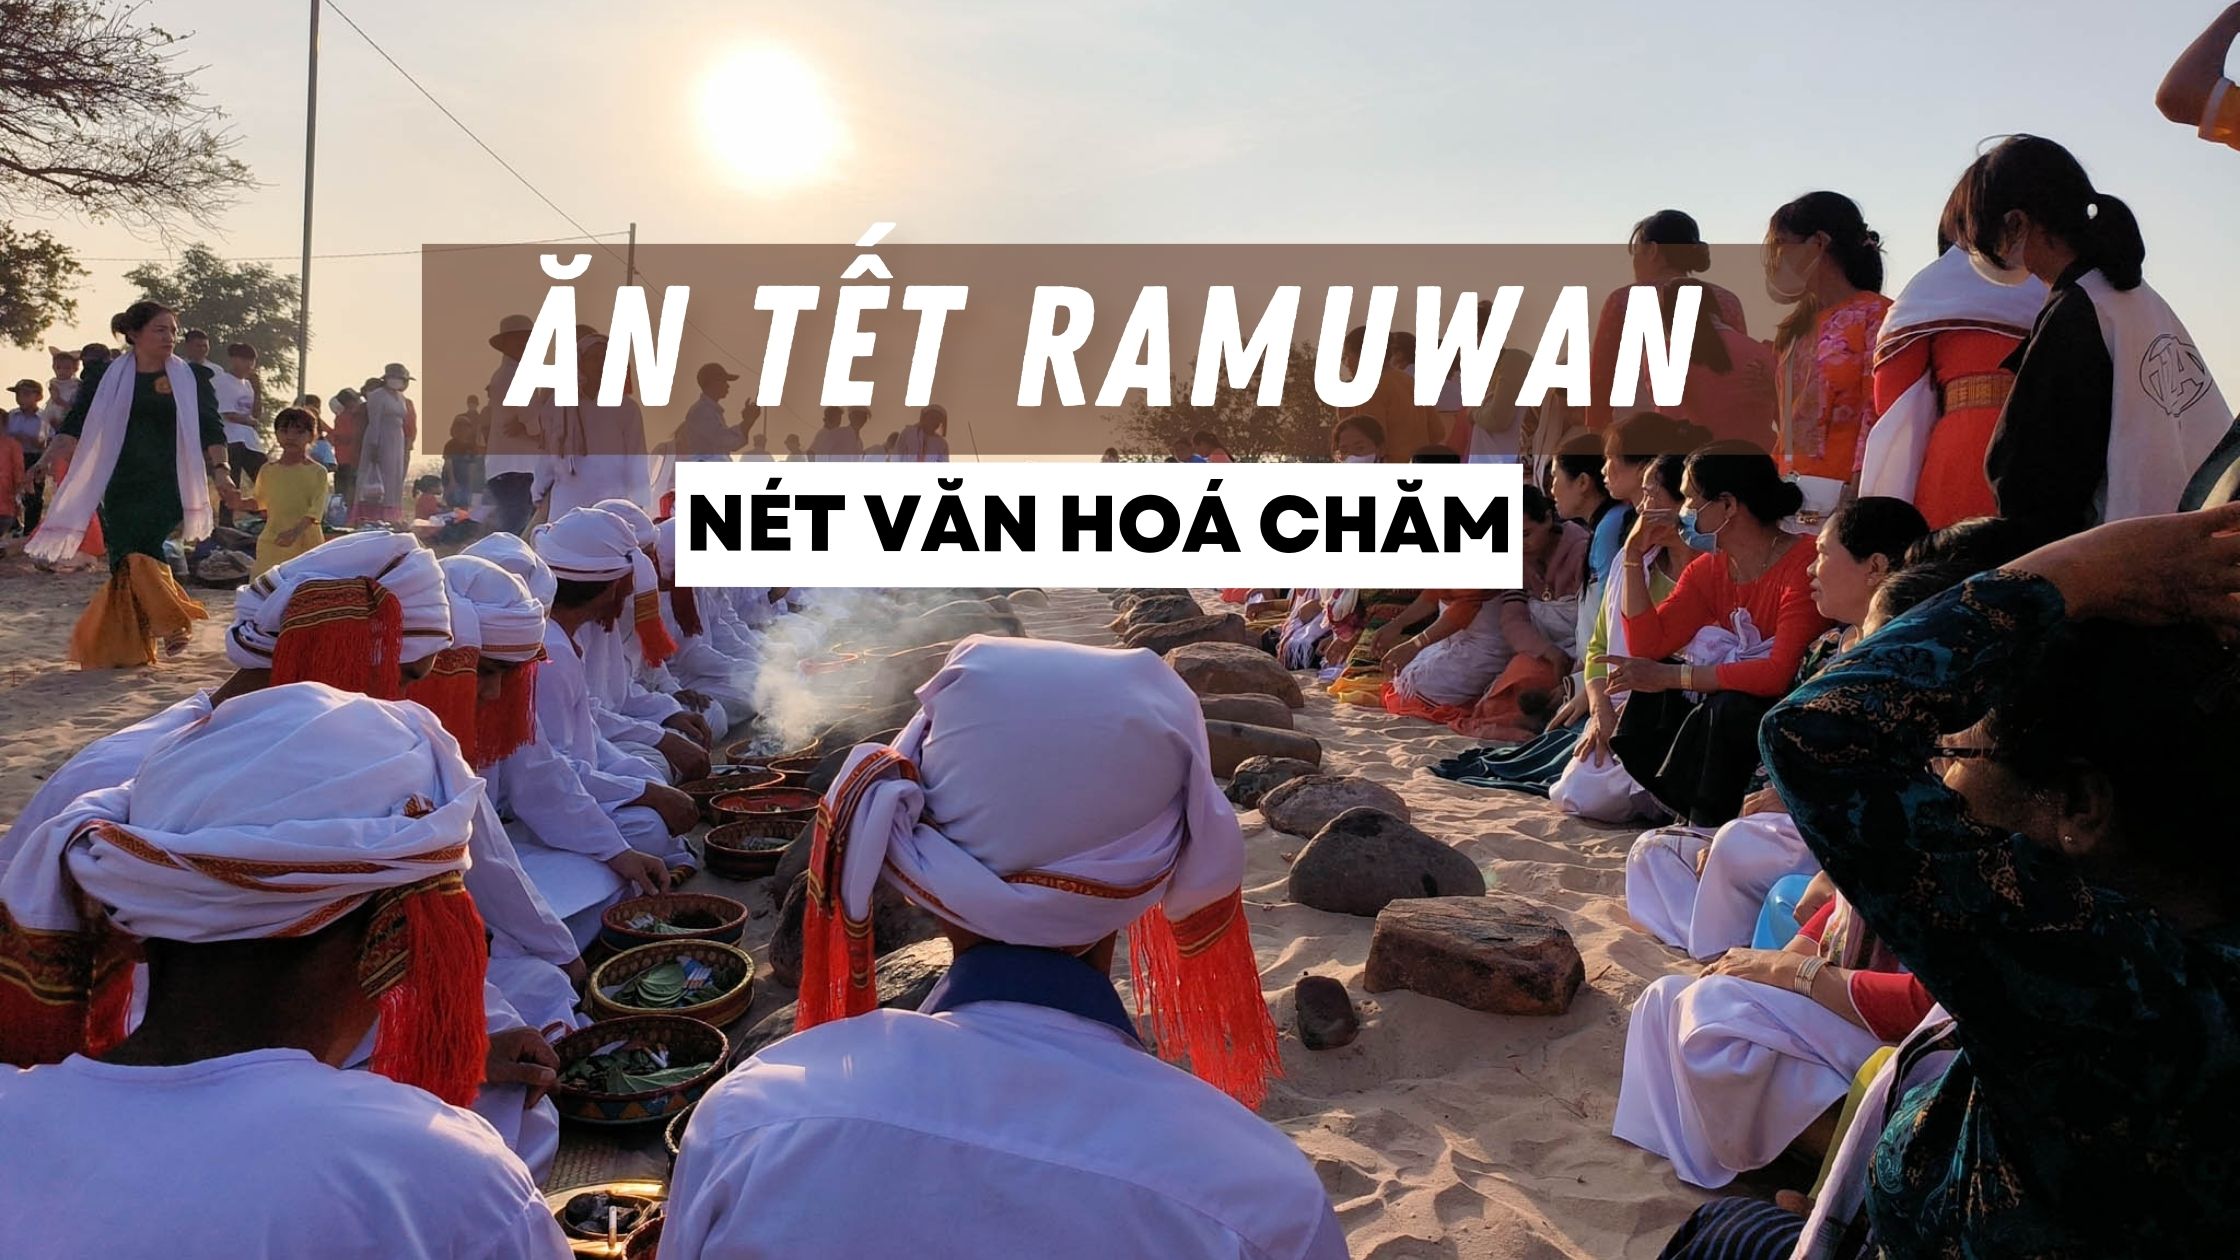 Chia sẻ hình ảnh mình đi ăn Tết Ramưwan của đồng bào Chăm ở Ninh Thuận